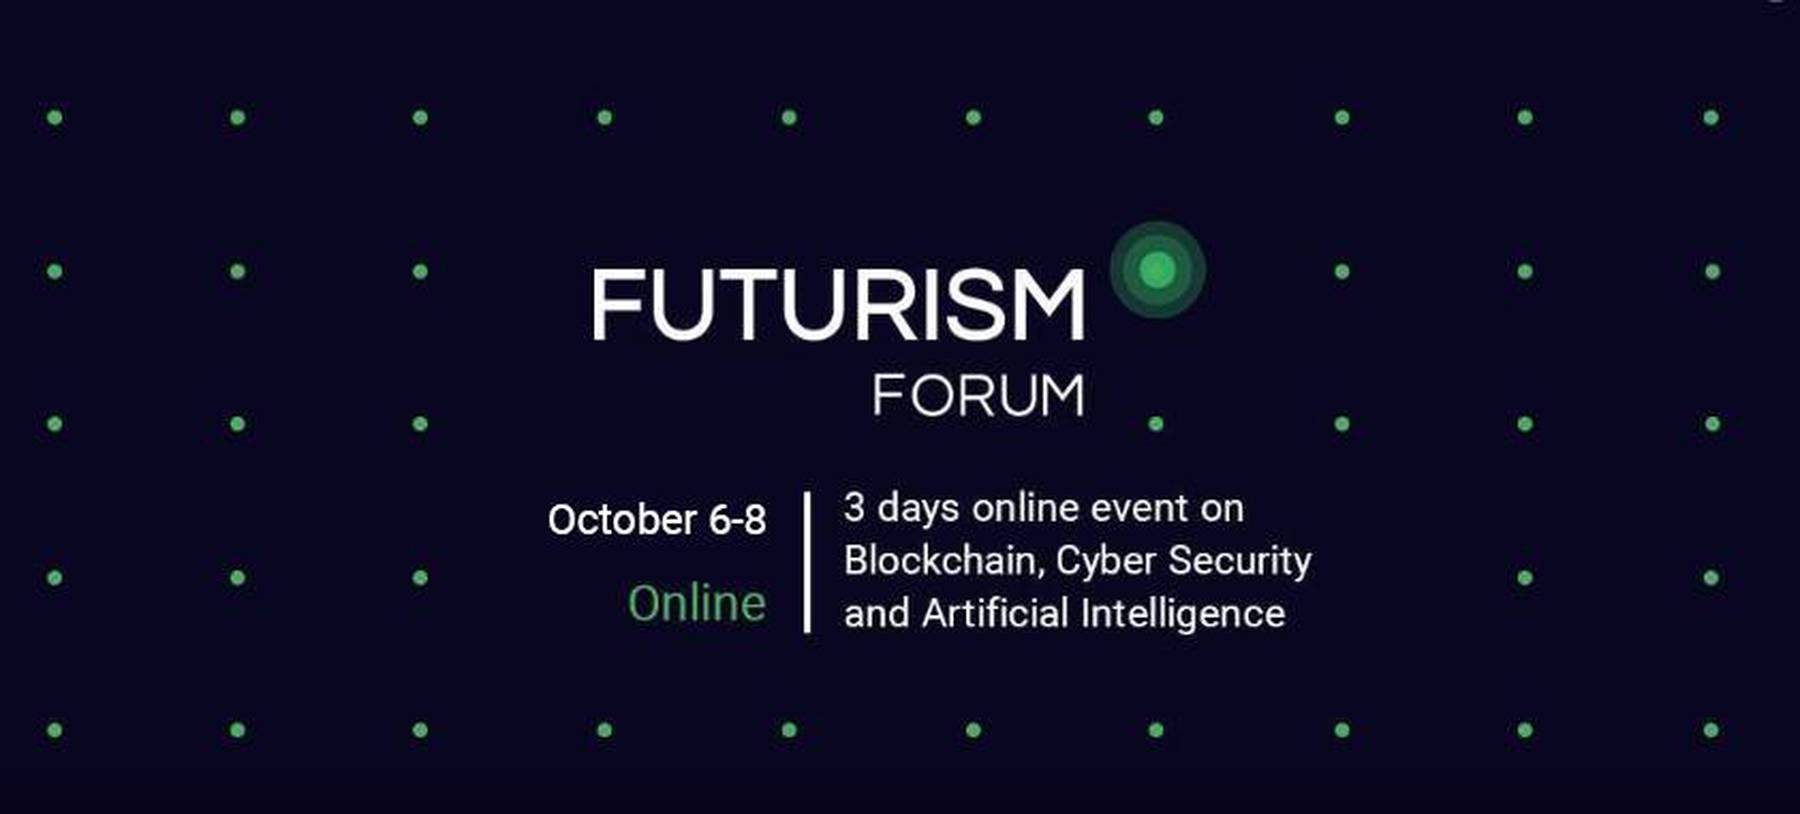 Futurism Forum 2020